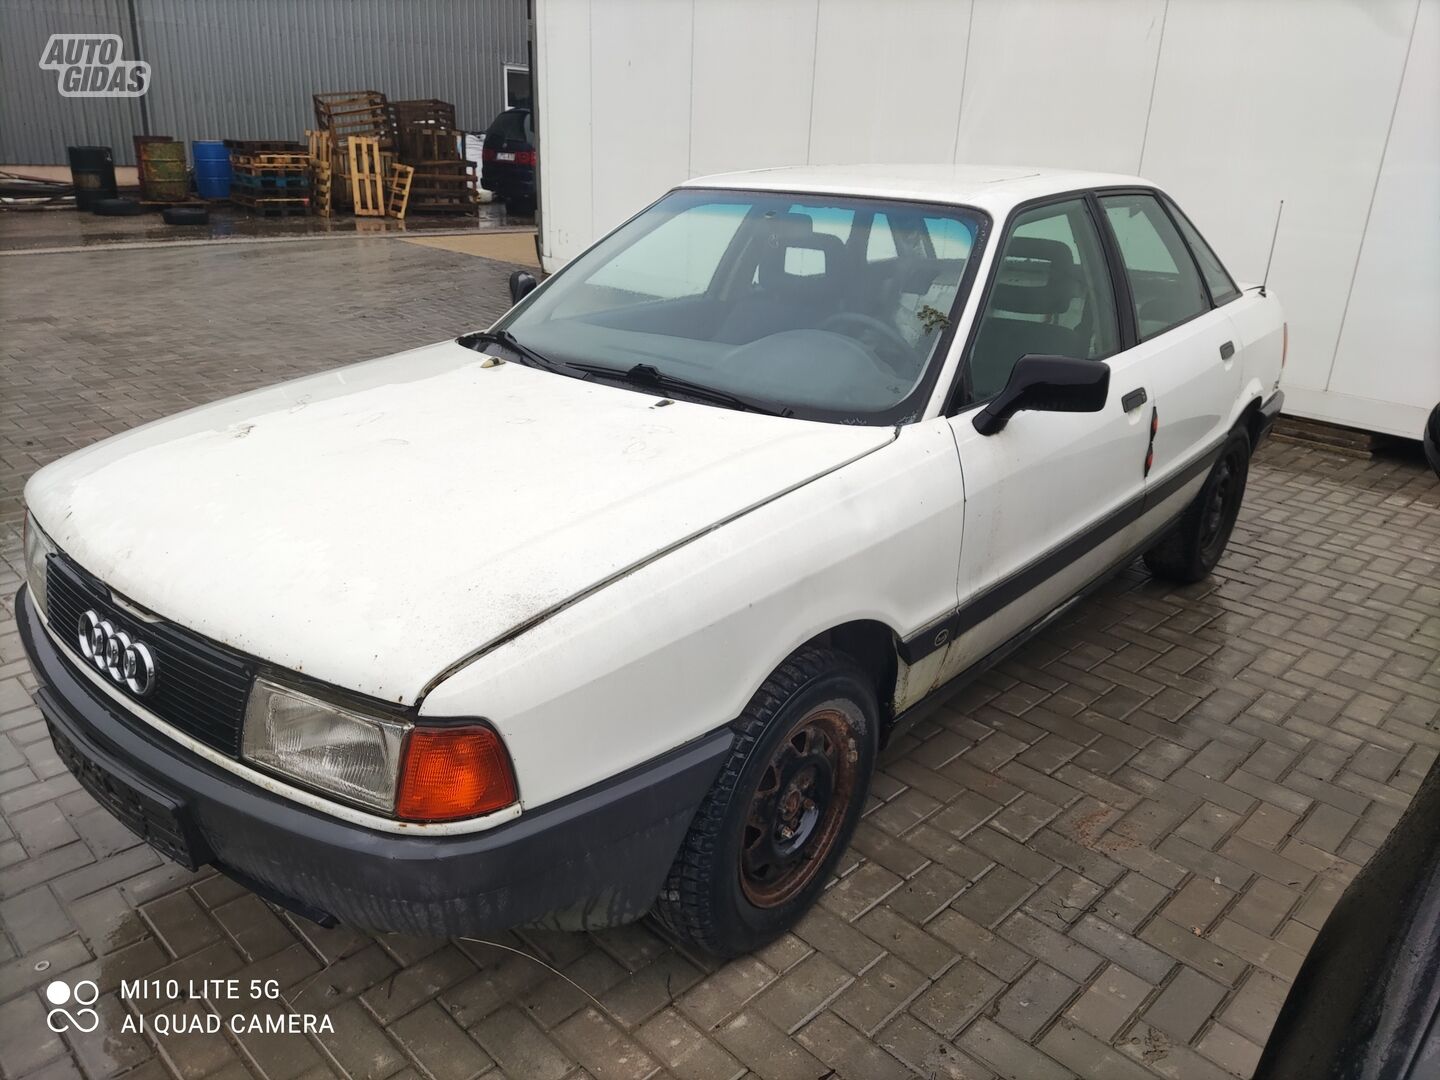 Audi 80 1991 г запчясти